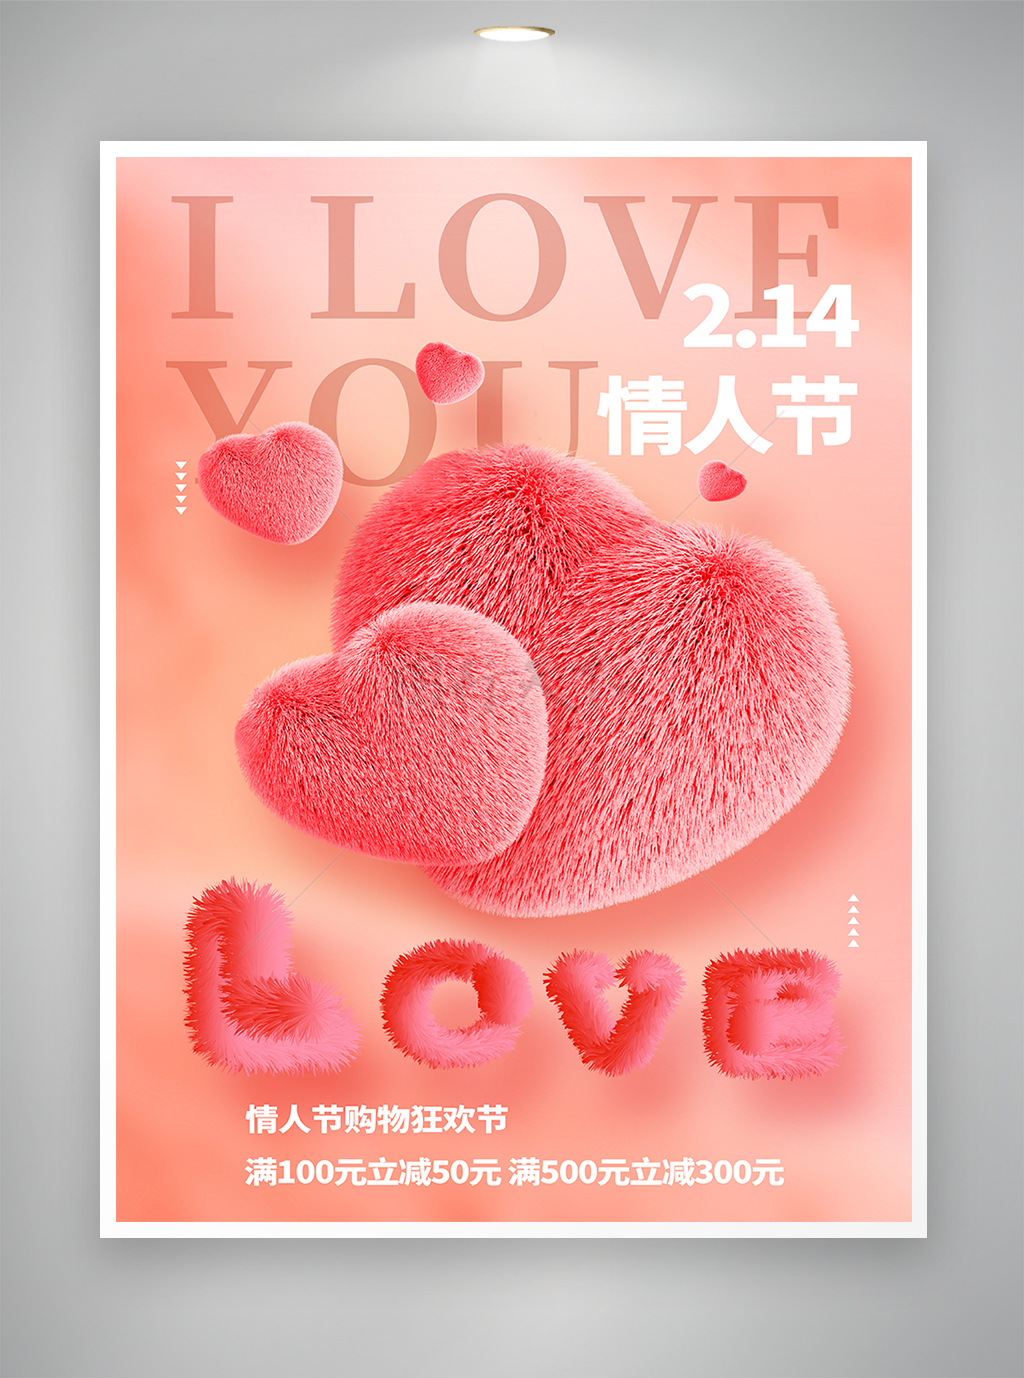 情人节节日促销宣传海报